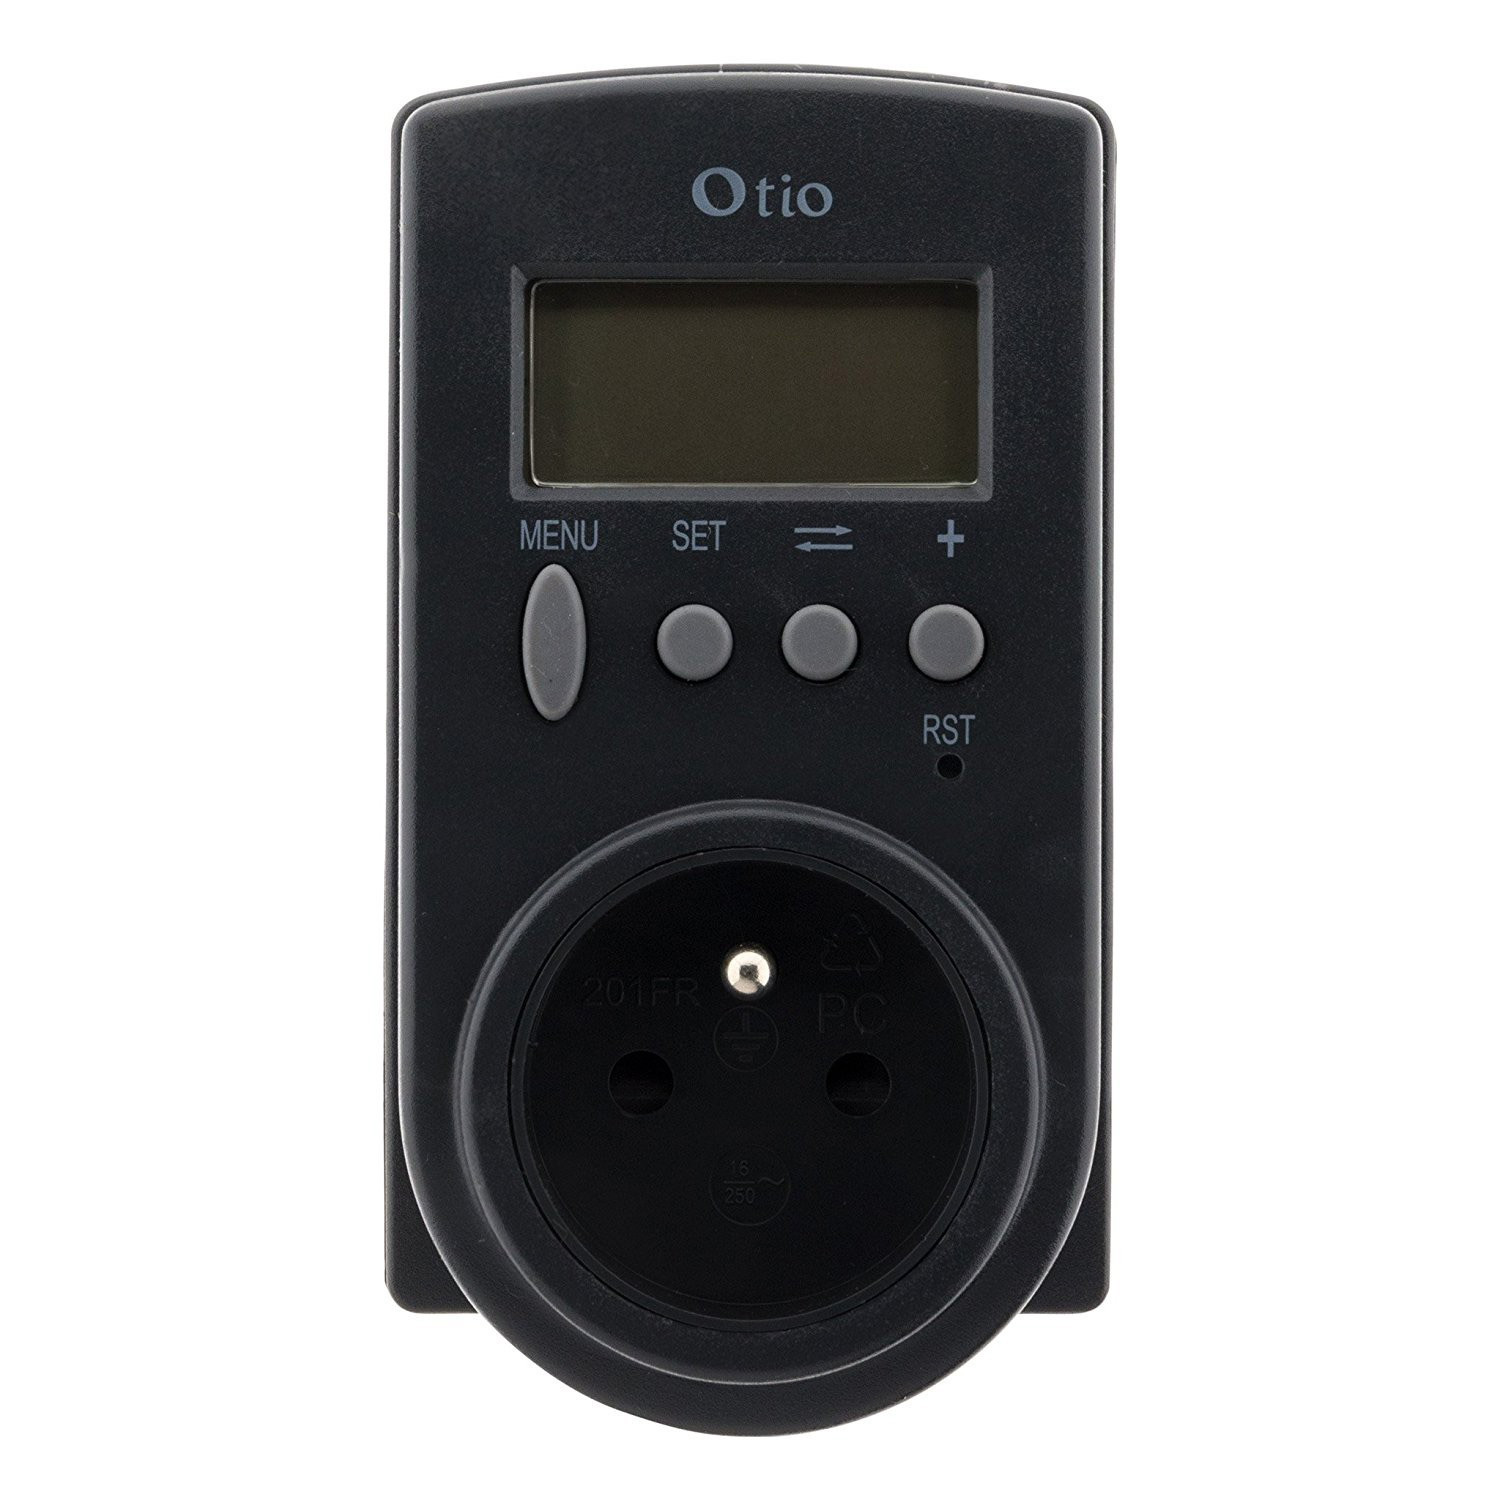 Otio - Contrôleur de consommation électrique - 730102